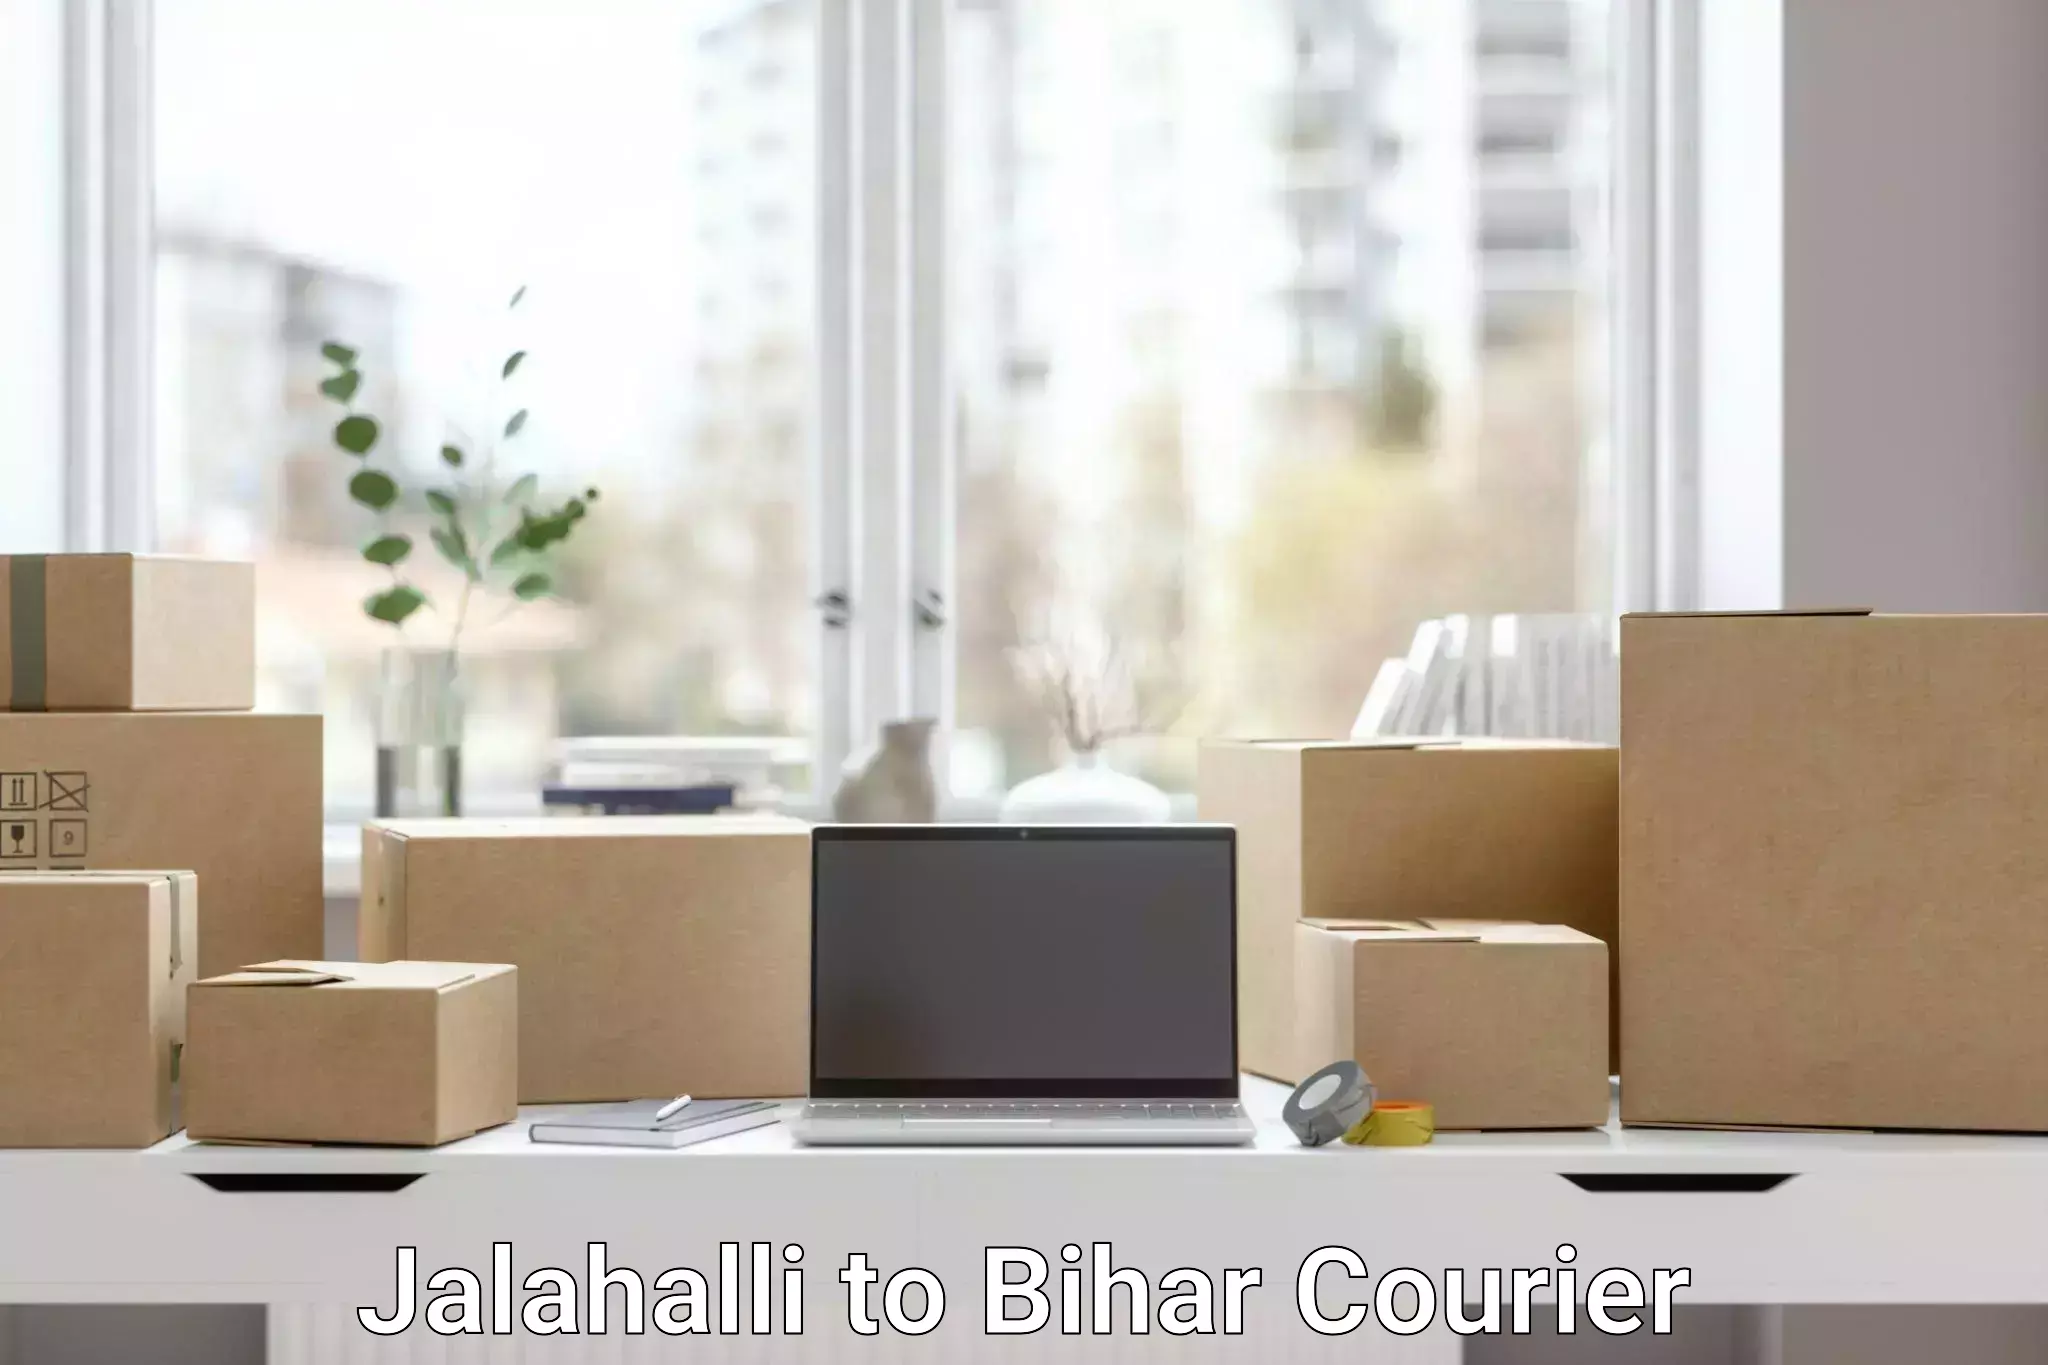 Efficient parcel service Jalahalli to Simrahi Bazar